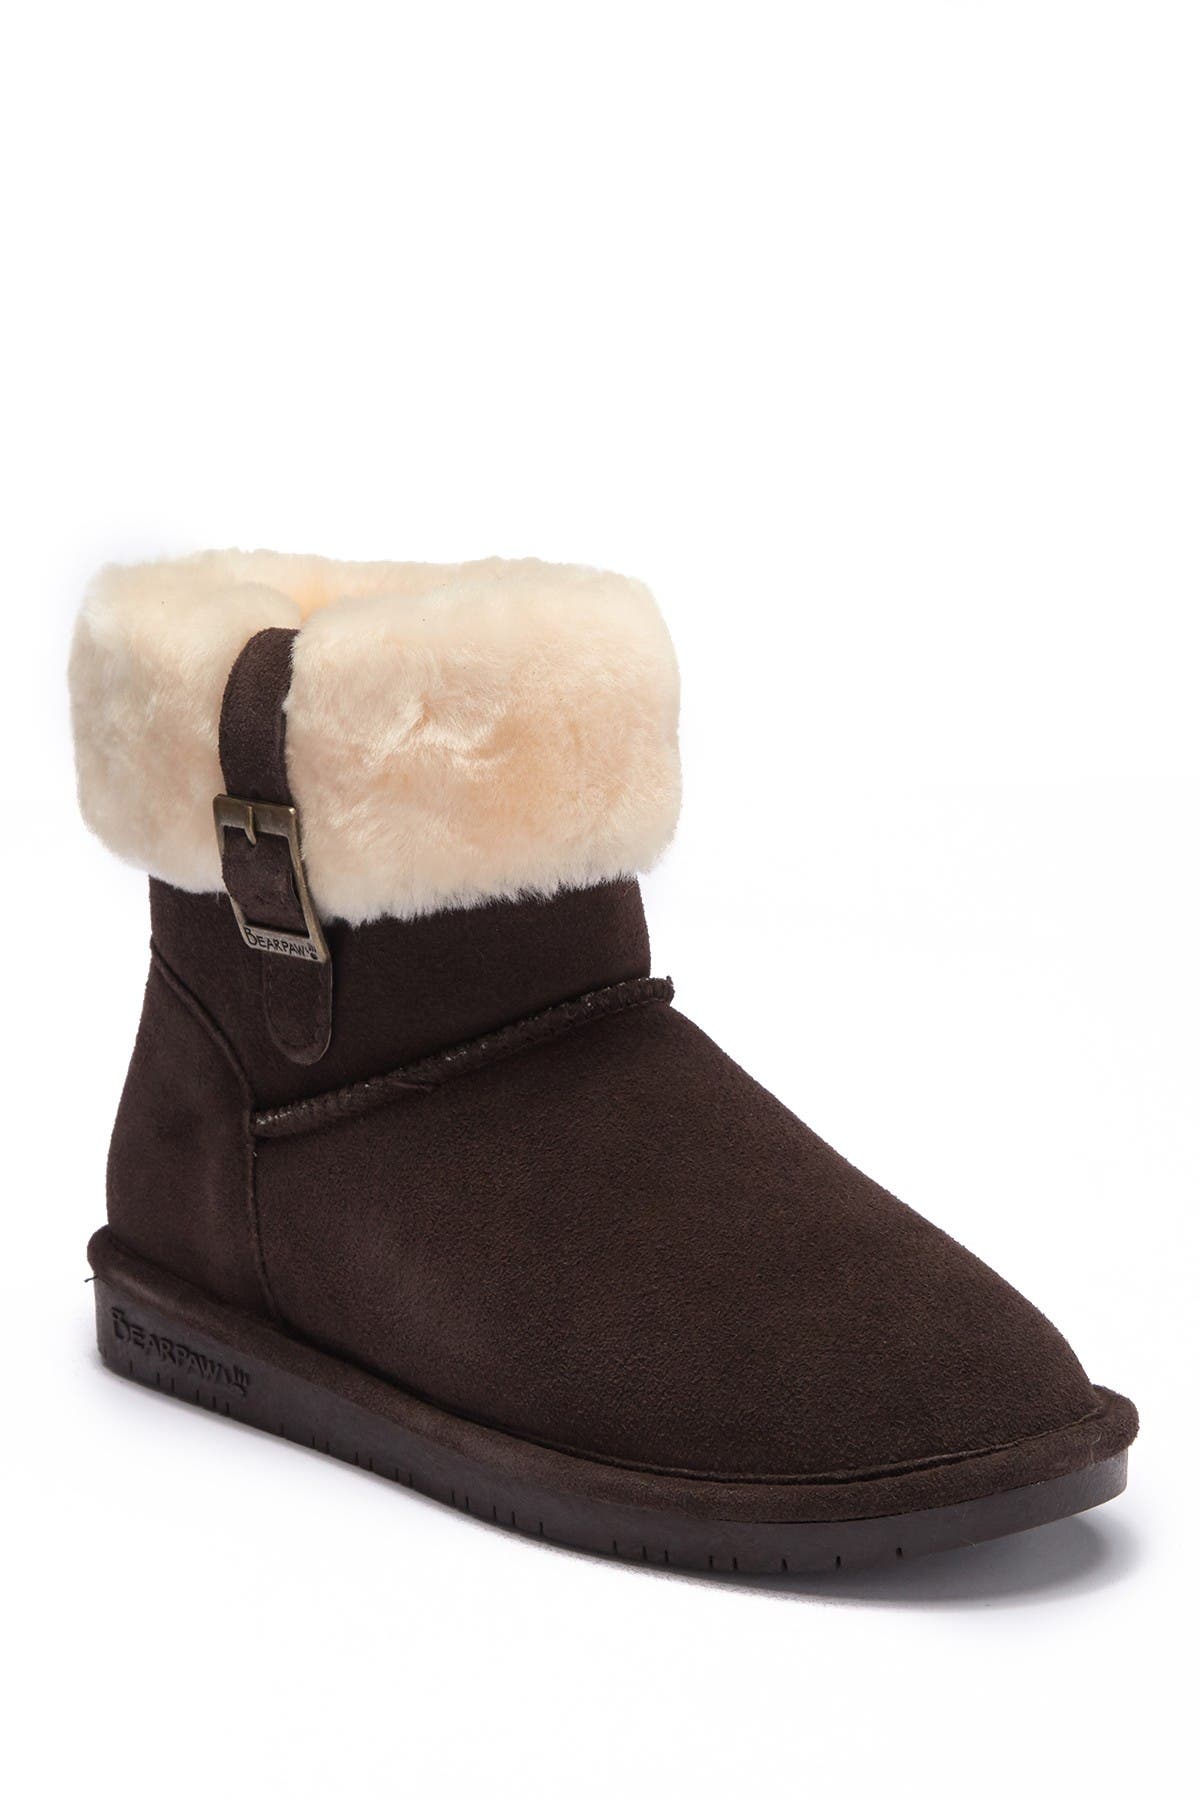 bearpaw wool boots